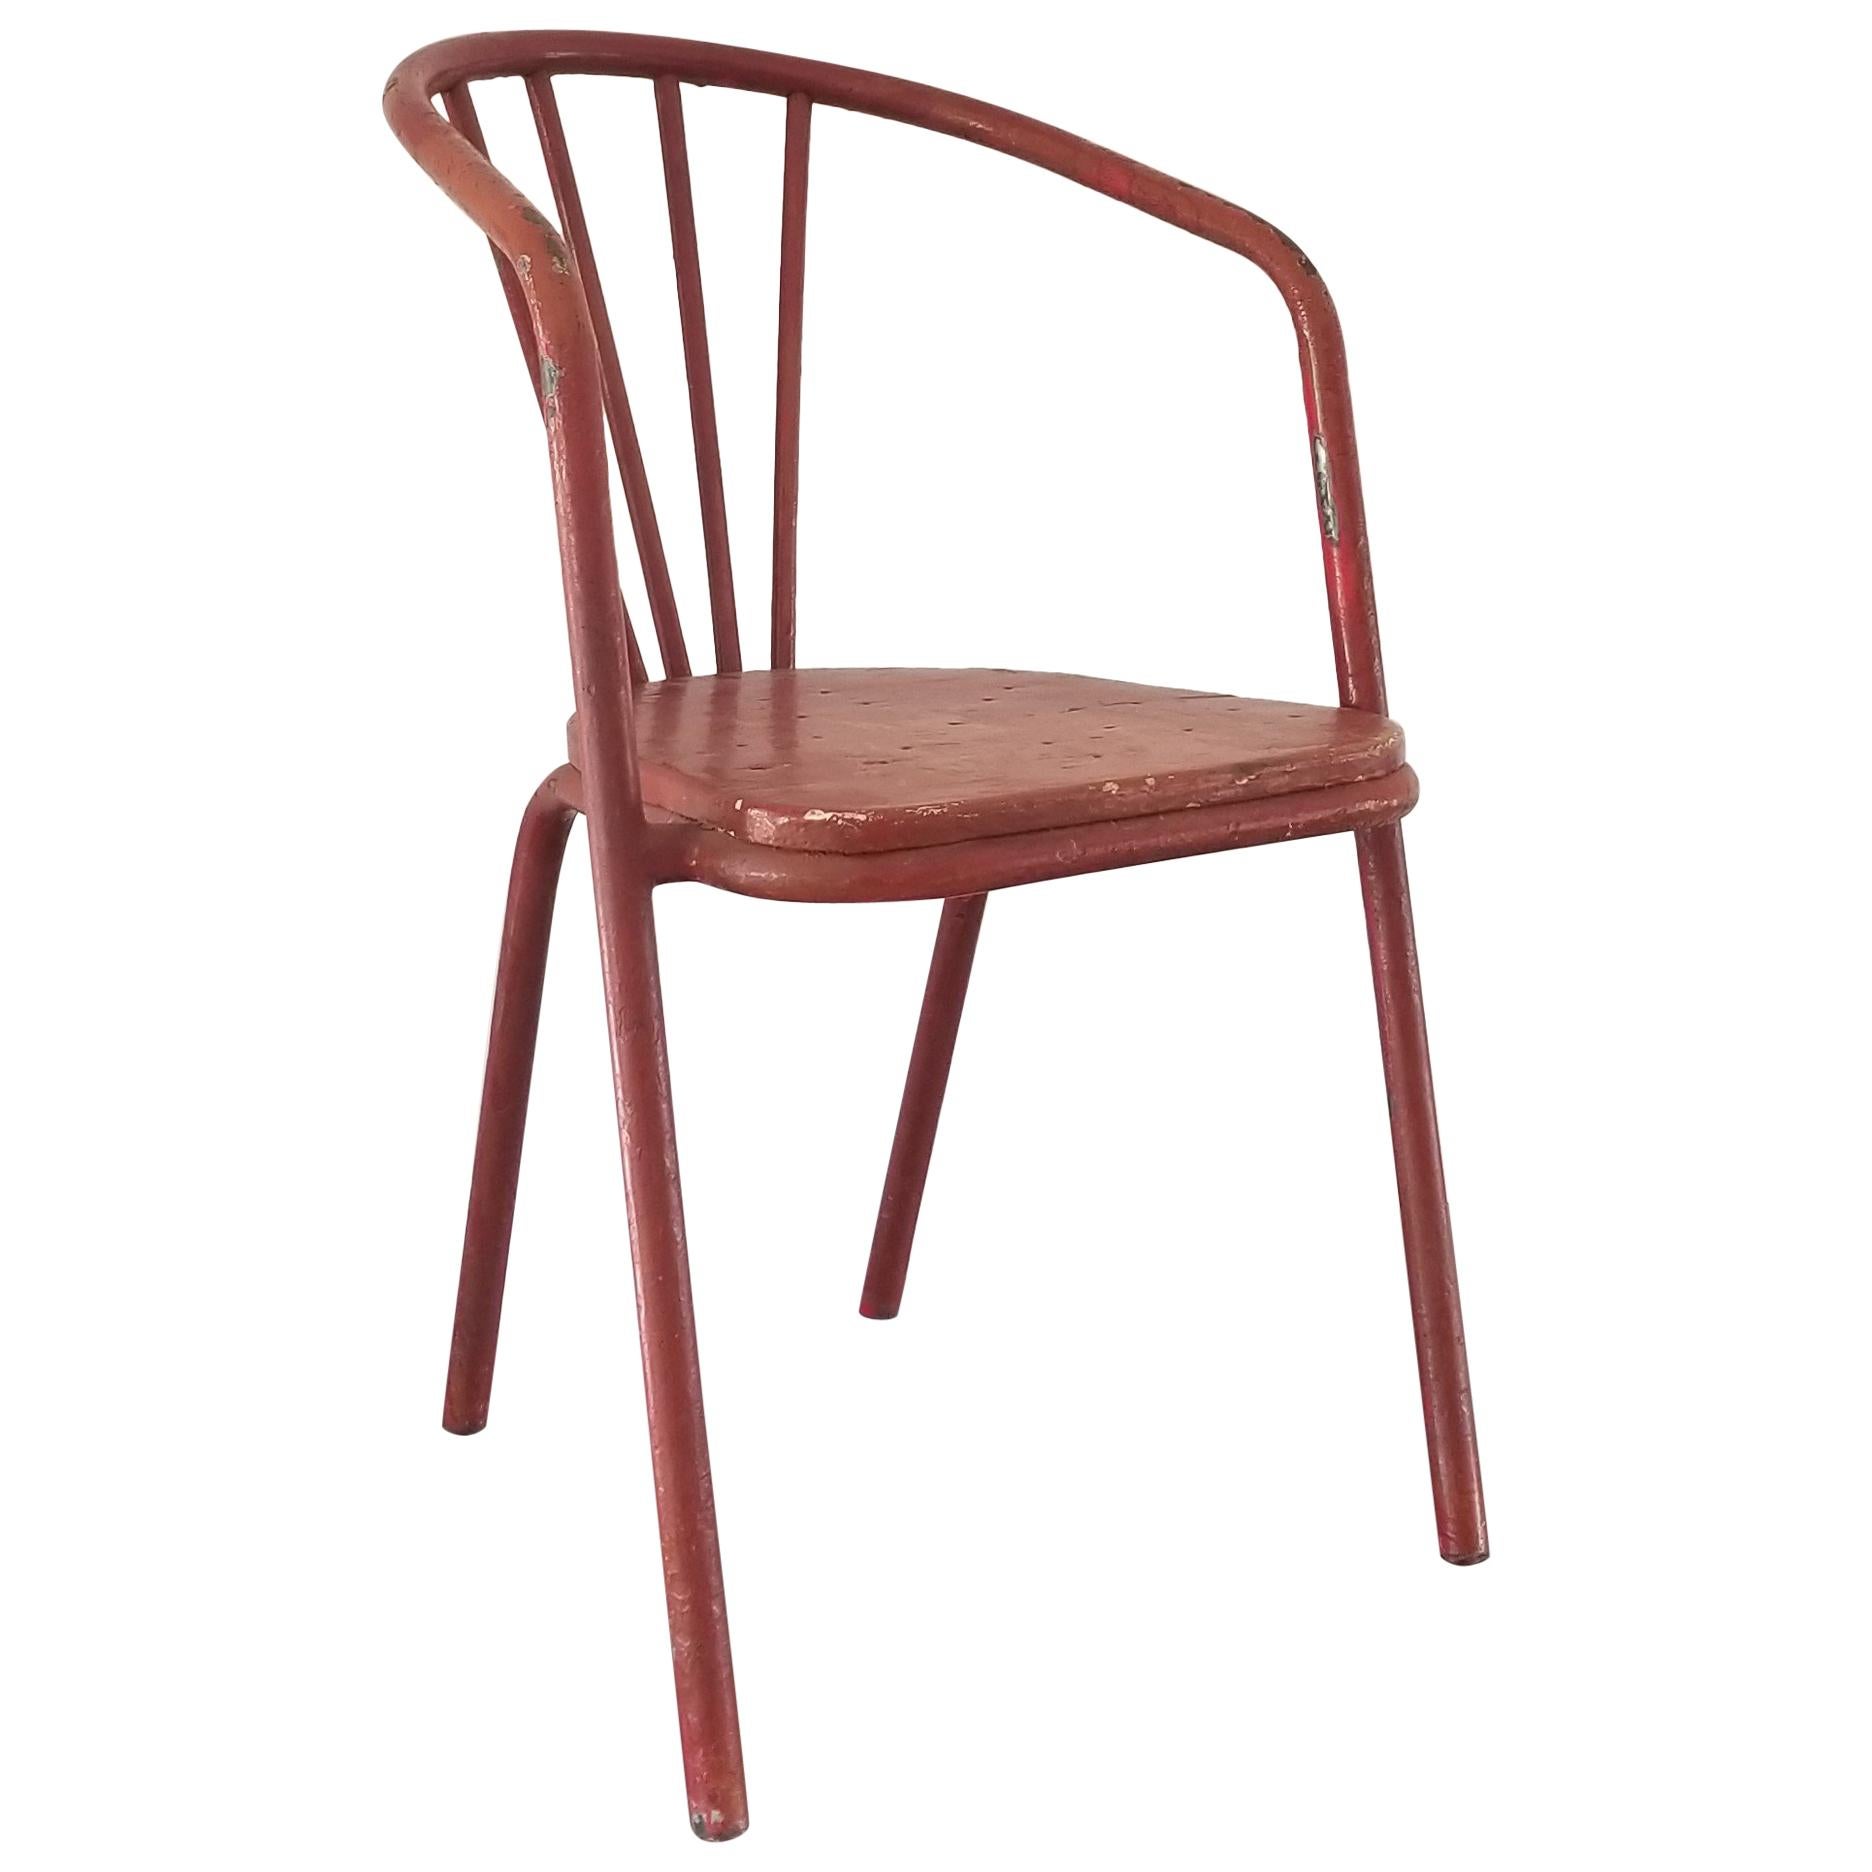 Modernist Chair by Robert Mallet Stevens, France, 1930s